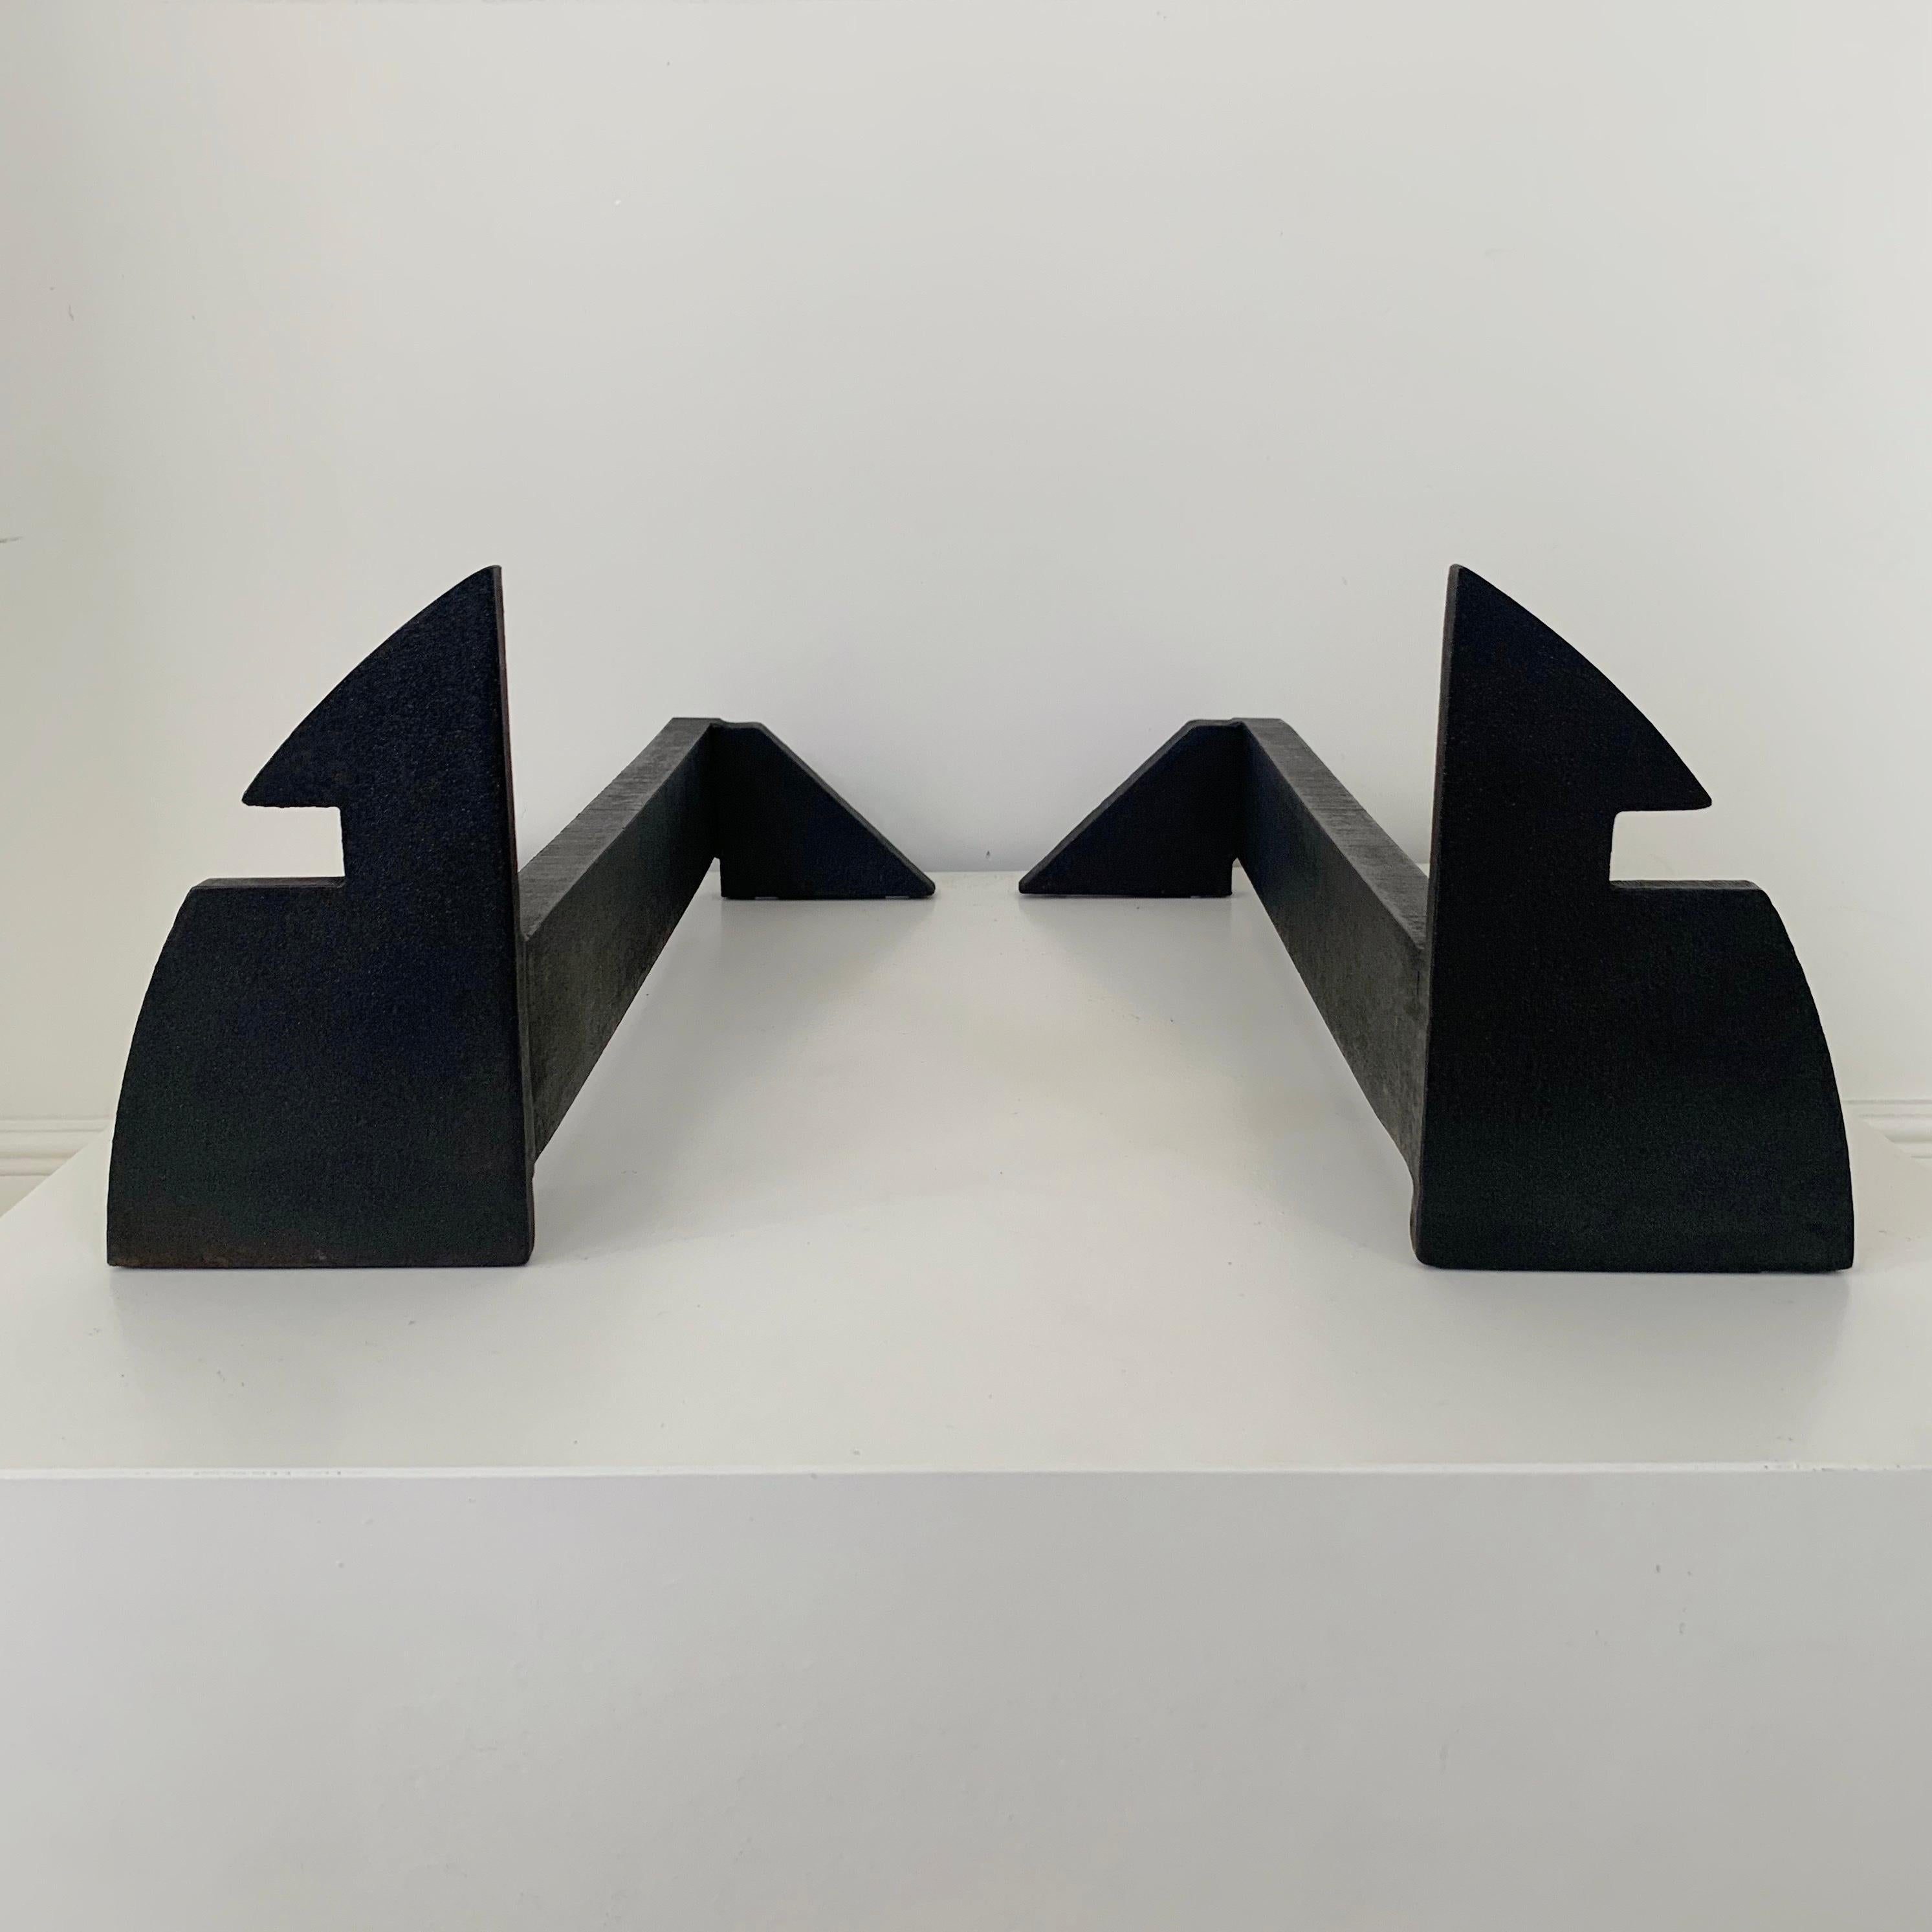 Ein Paar grafische und minimalistische Kaminöfen, um 1970, Frankreich.
Dieses Paar kann in zwei verschiedenen Positionen präsentiert werden, wodurch sich zwei ungewöhnliche geometrische Kompositionen ergeben.
Schmiedeeisen. Ein sehr schönes und